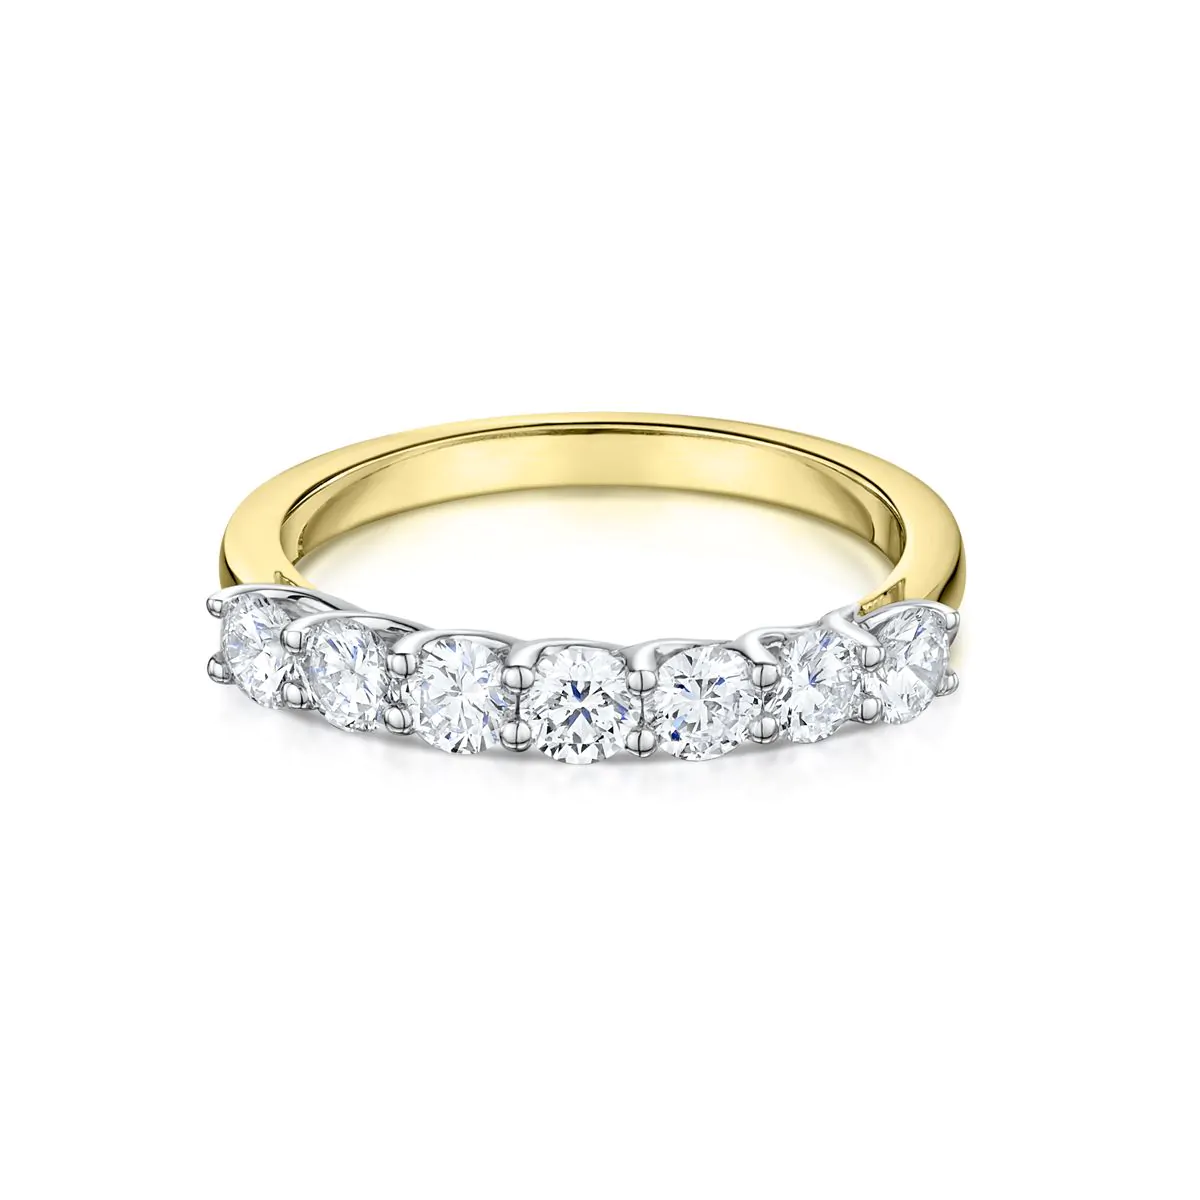 7 stone diamond wedding band ring - YouTube